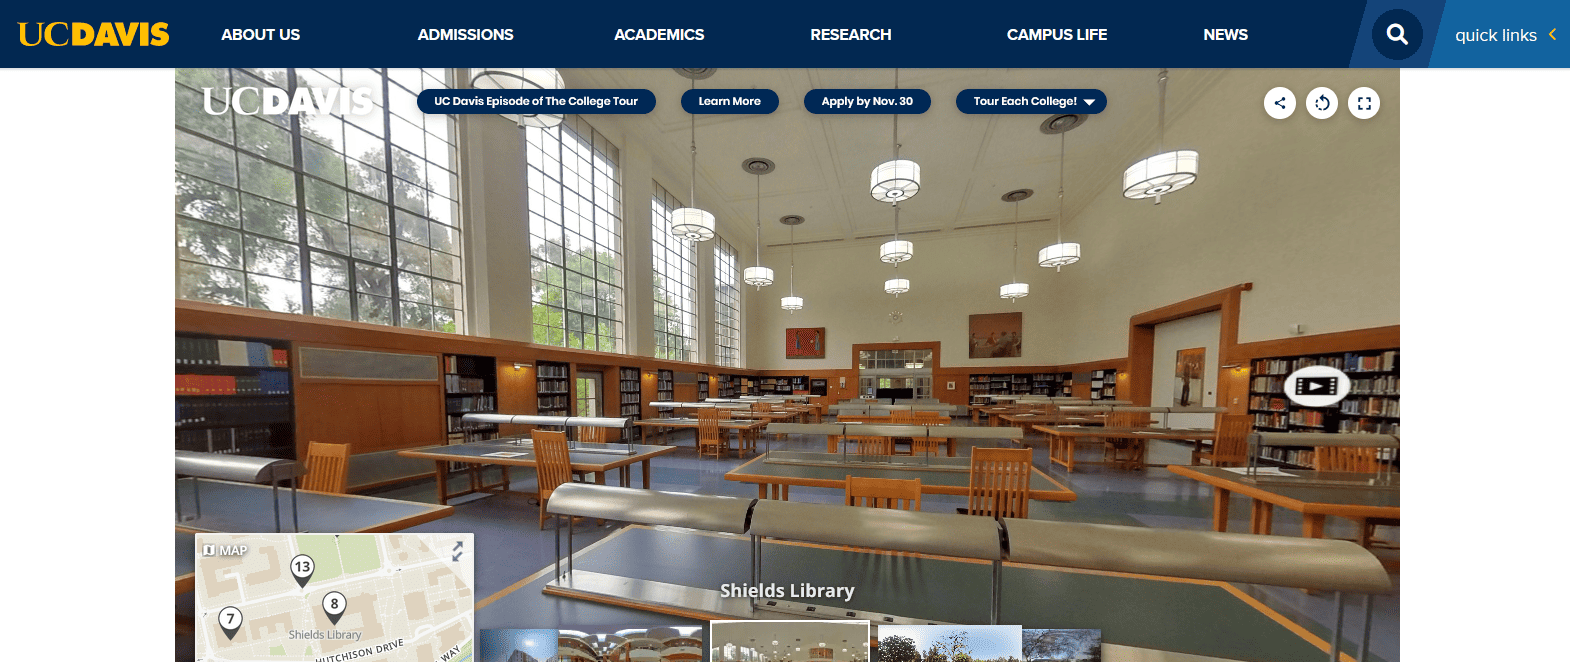 加州大學戴維斯分校的虛擬遊覽